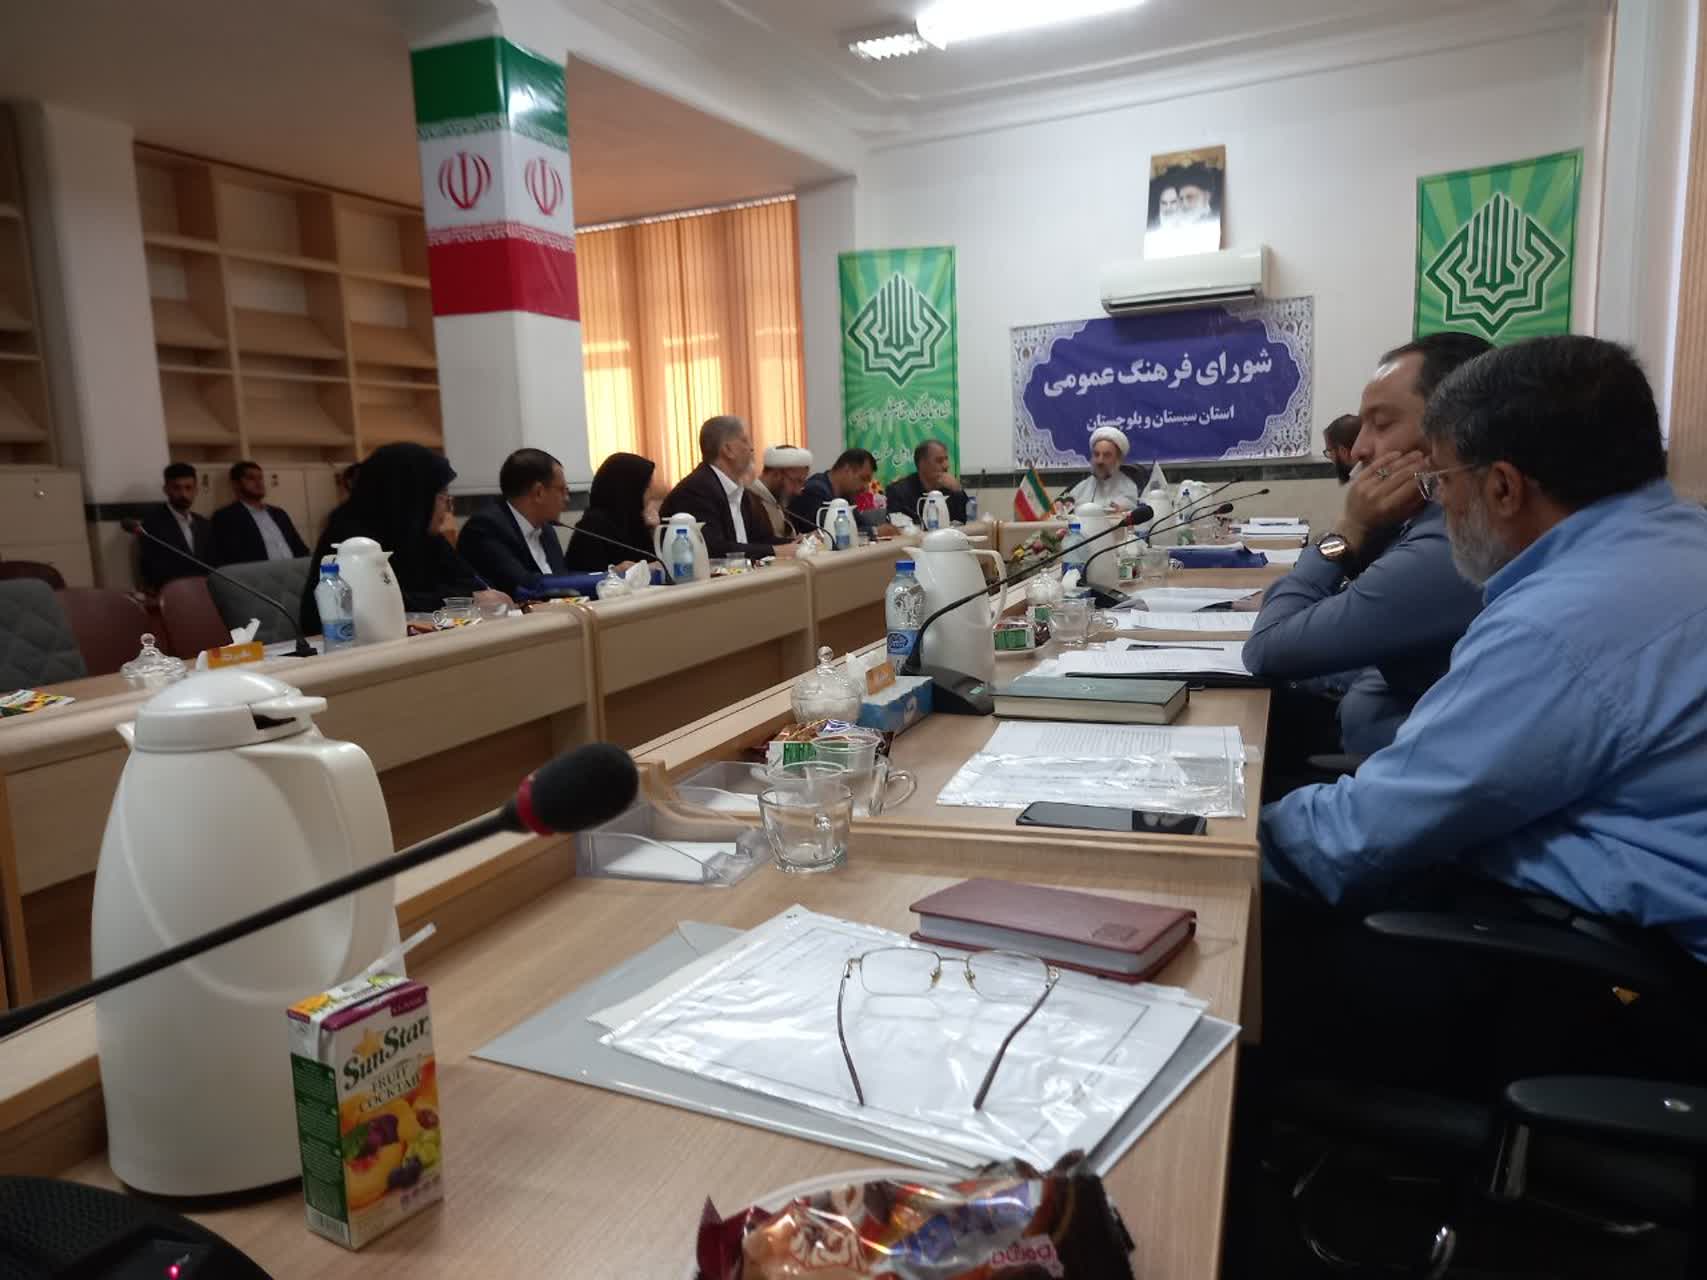 شورای سیاستگذاری و پشتیبانی فعالیتهای مهدوی استان سیستان و بلوچستان برگزار شد